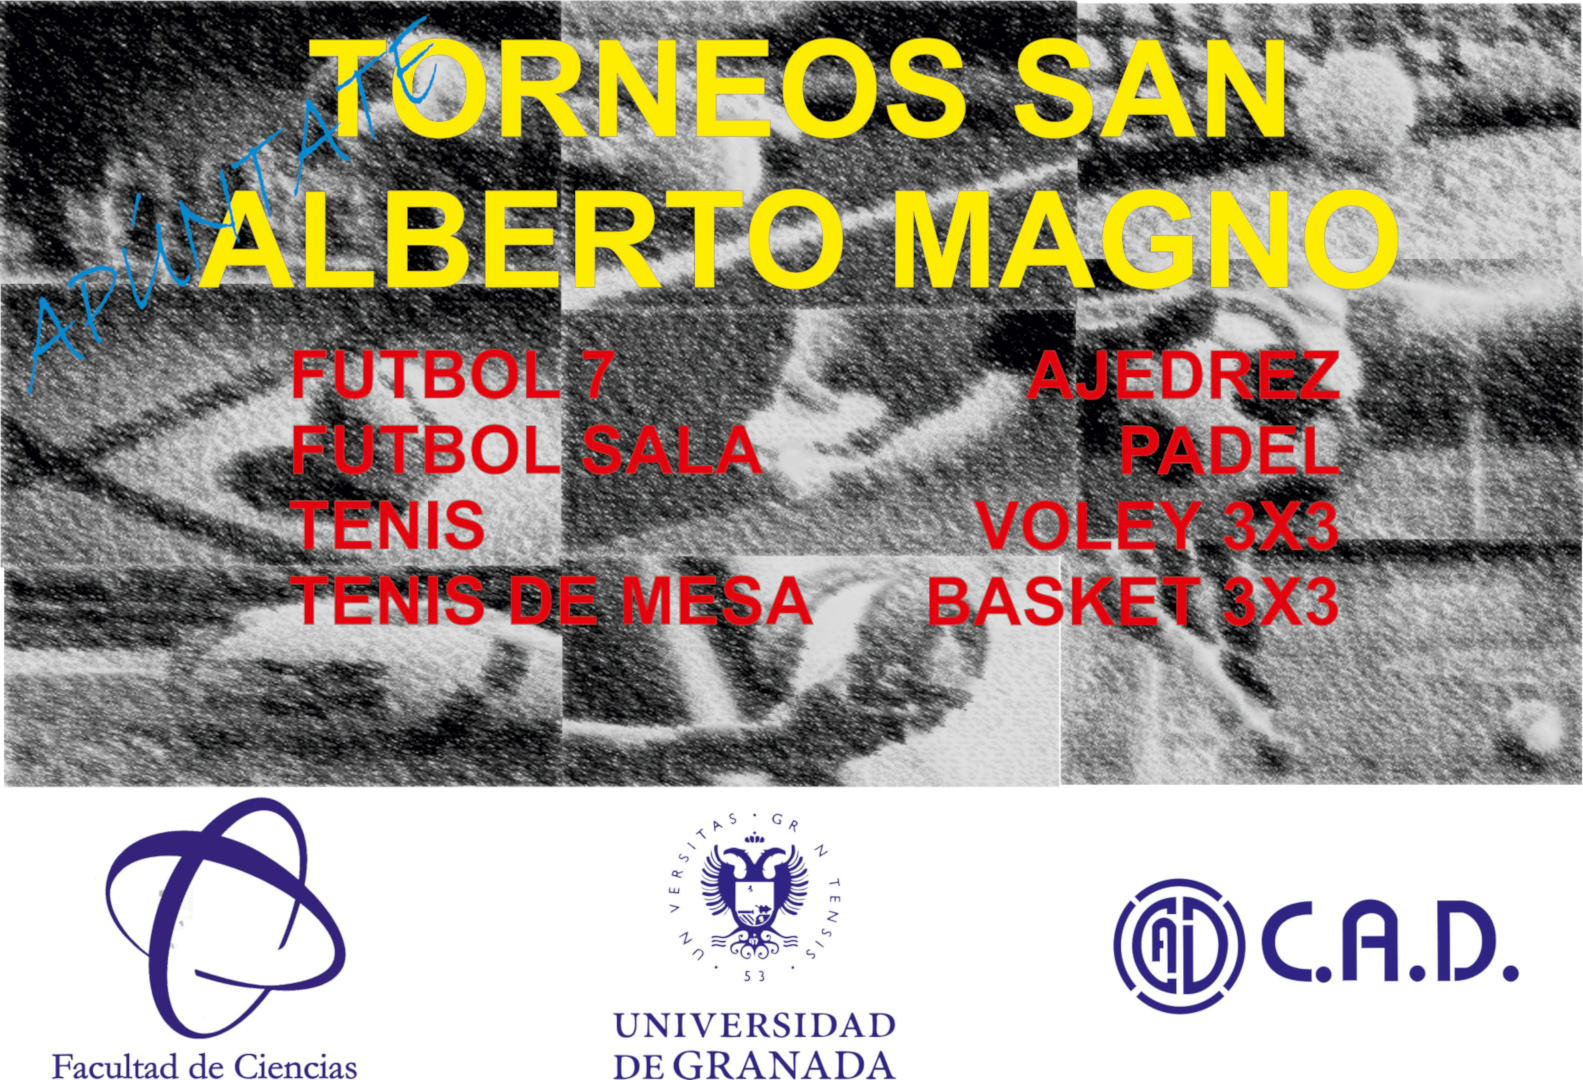 Torneos de San Alberto Magno 2018